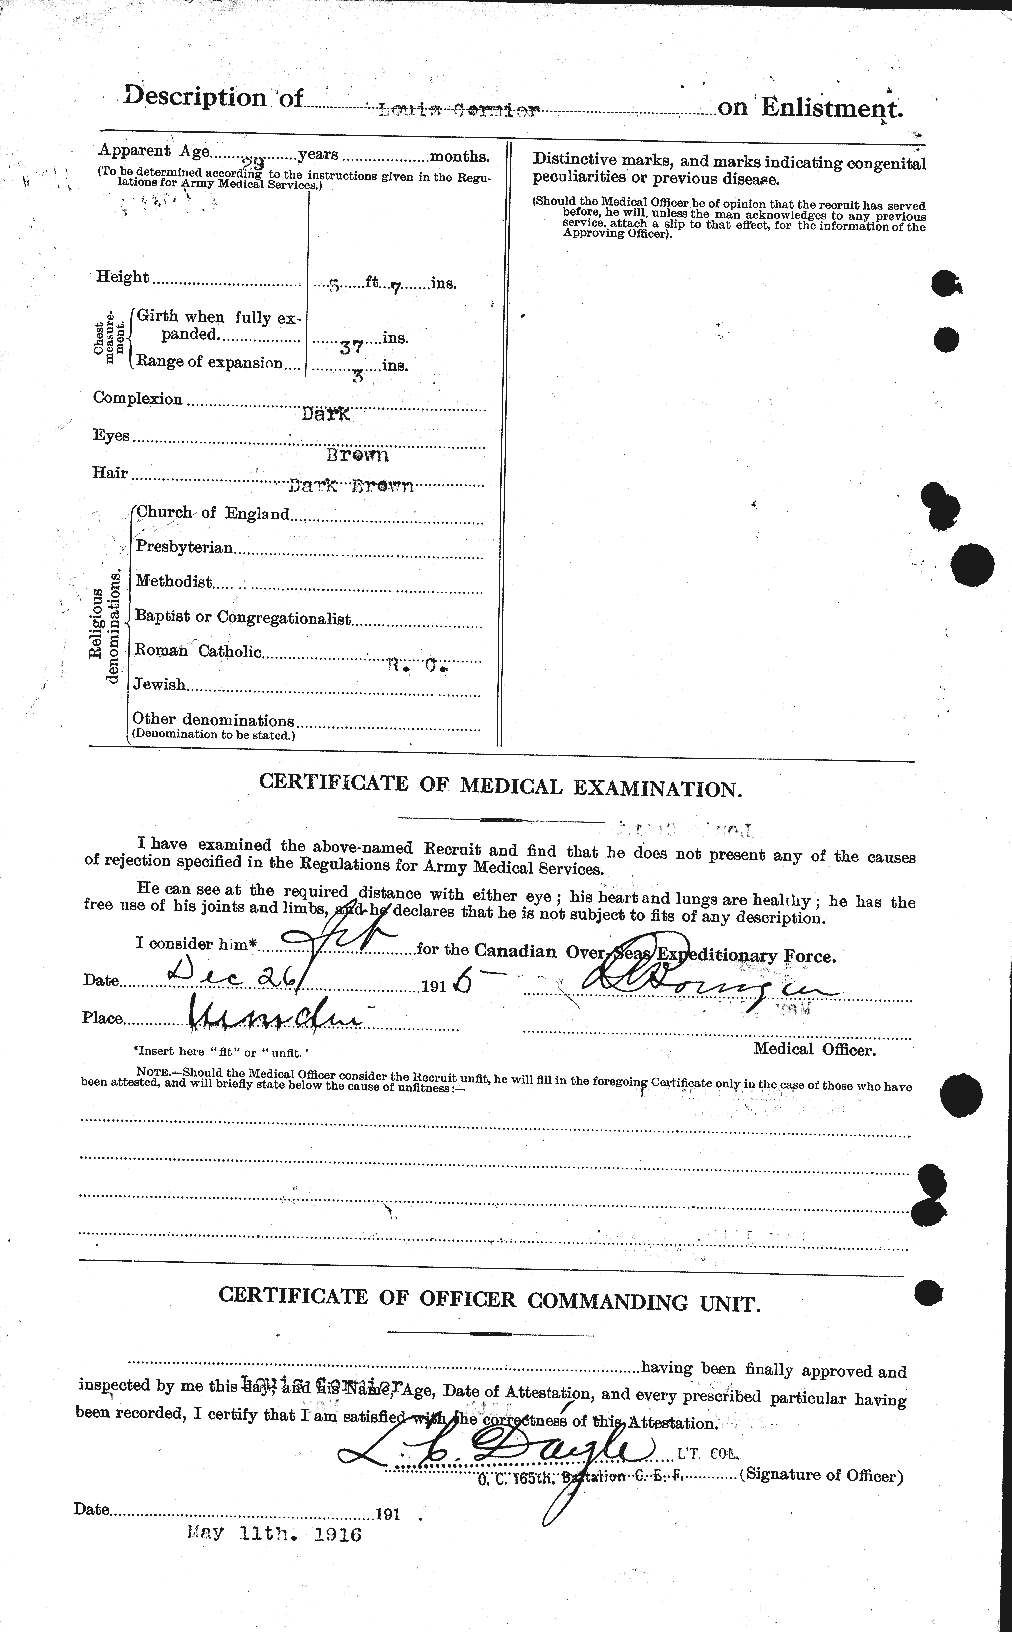 Dossiers du Personnel de la Première Guerre mondiale - CEC 265051b